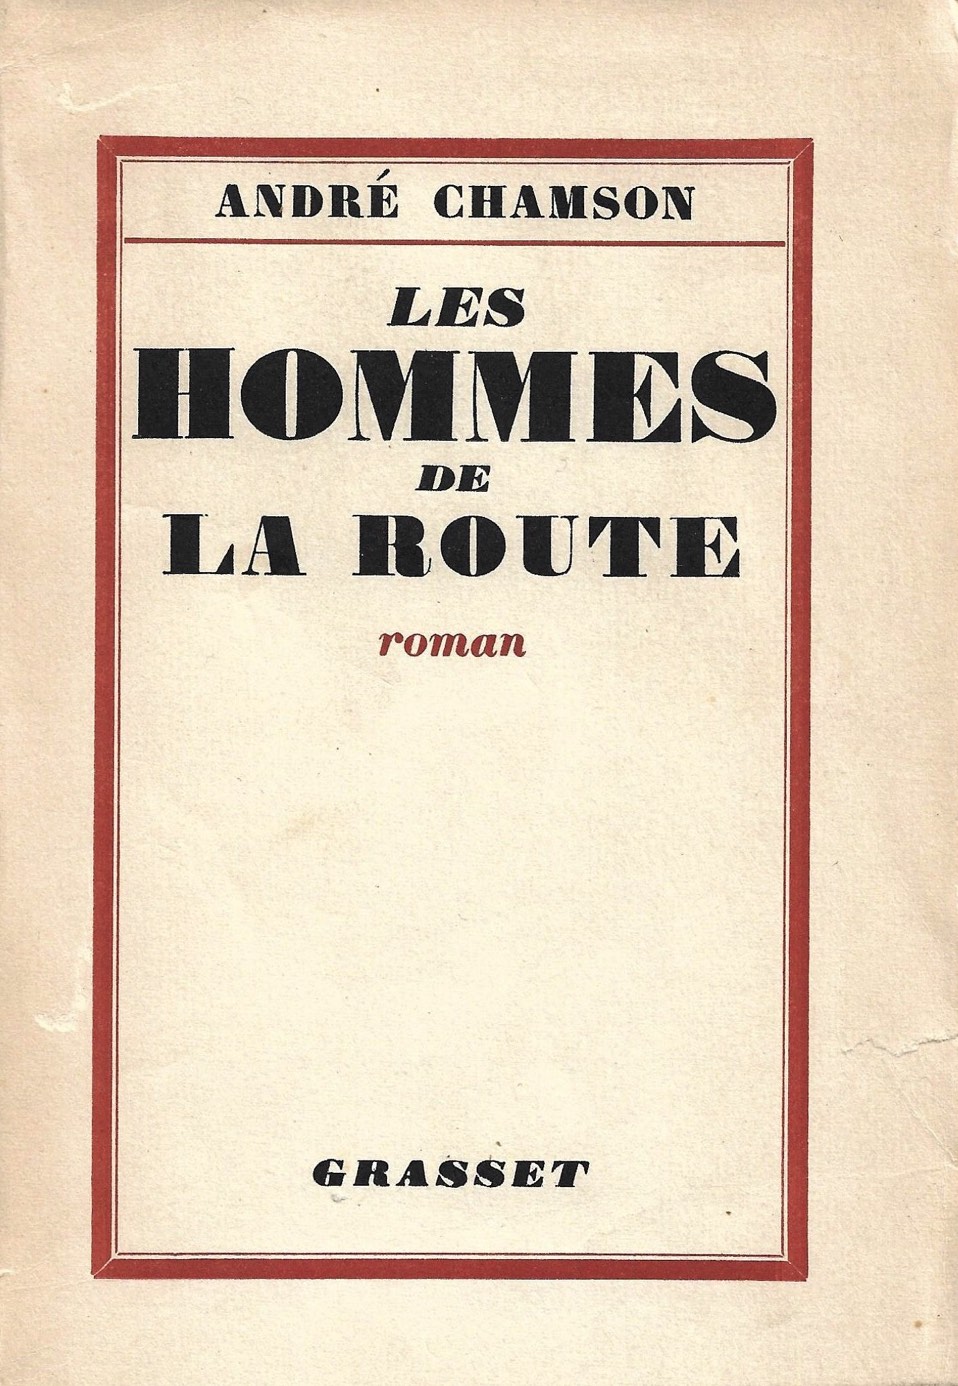 Les Hommes de la Route - Grasset 1927